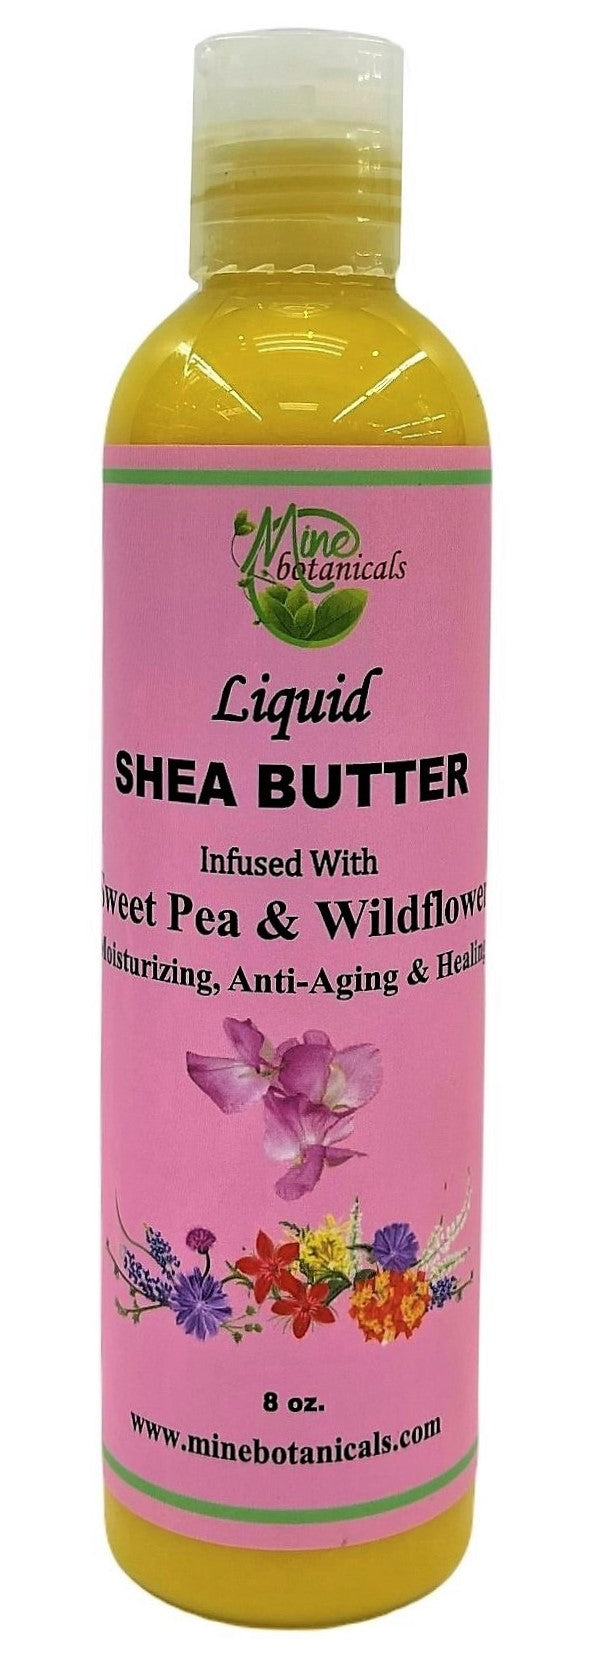 Sweet Pea & Wildflower Liquid shea butter